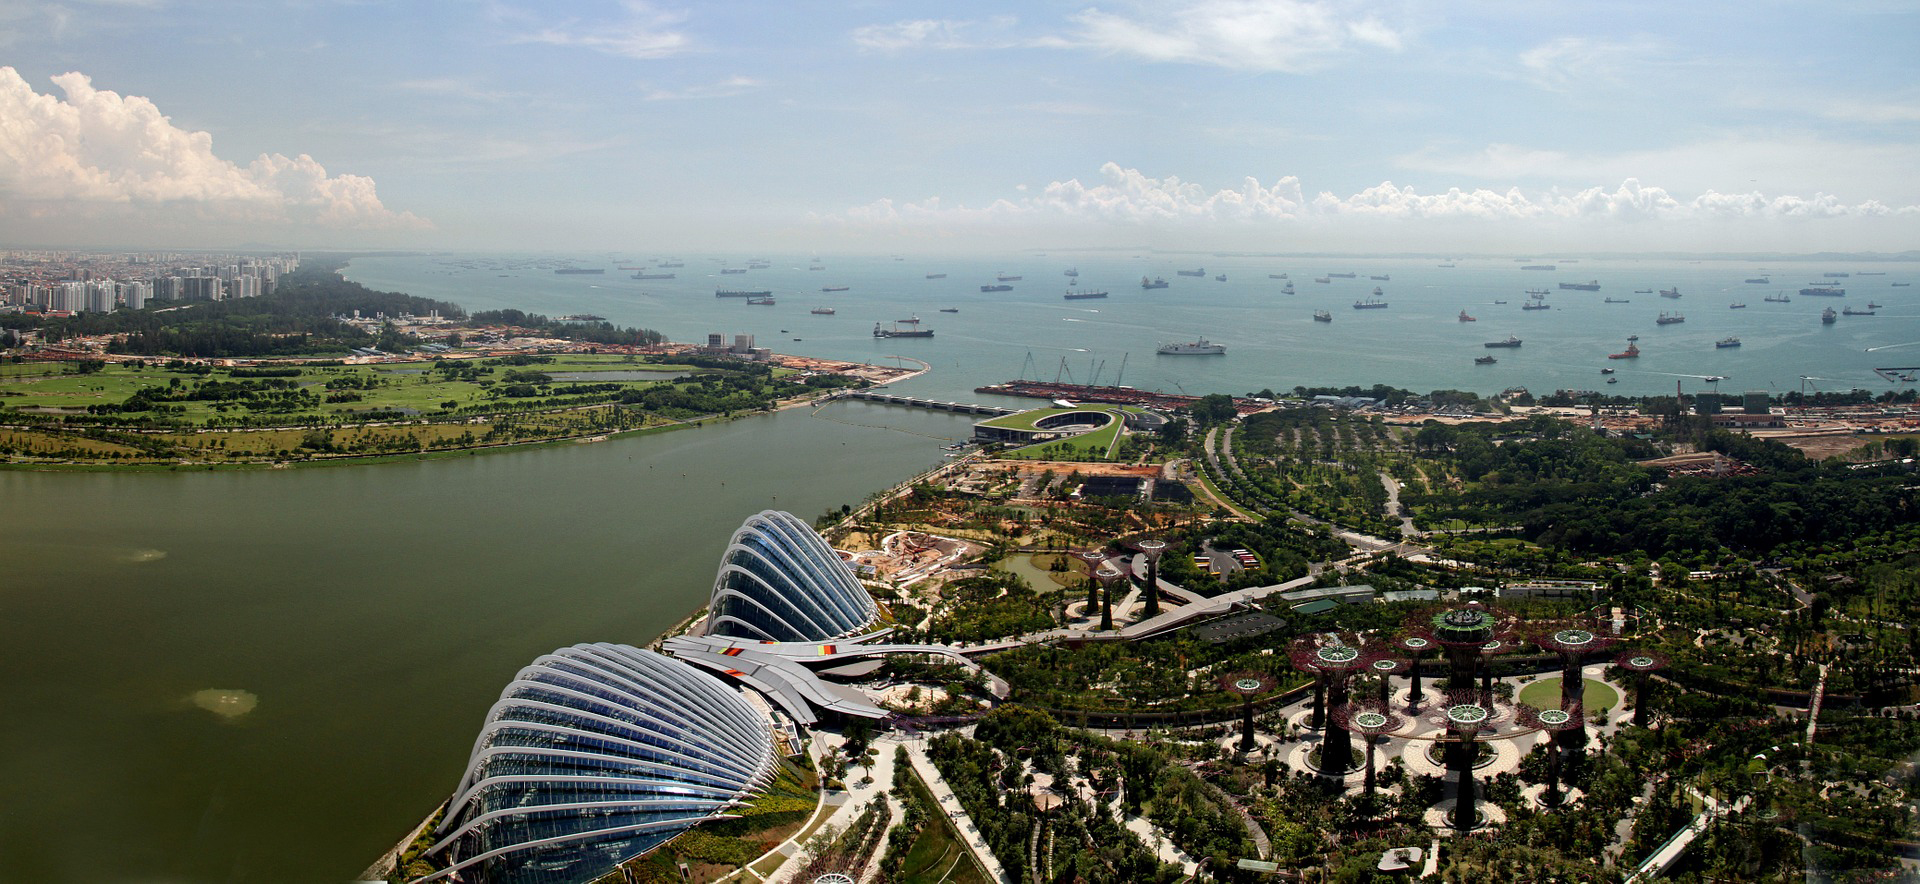 シンガポール：慈善団体によるビジネス参入、監視強化で指針を改定へ